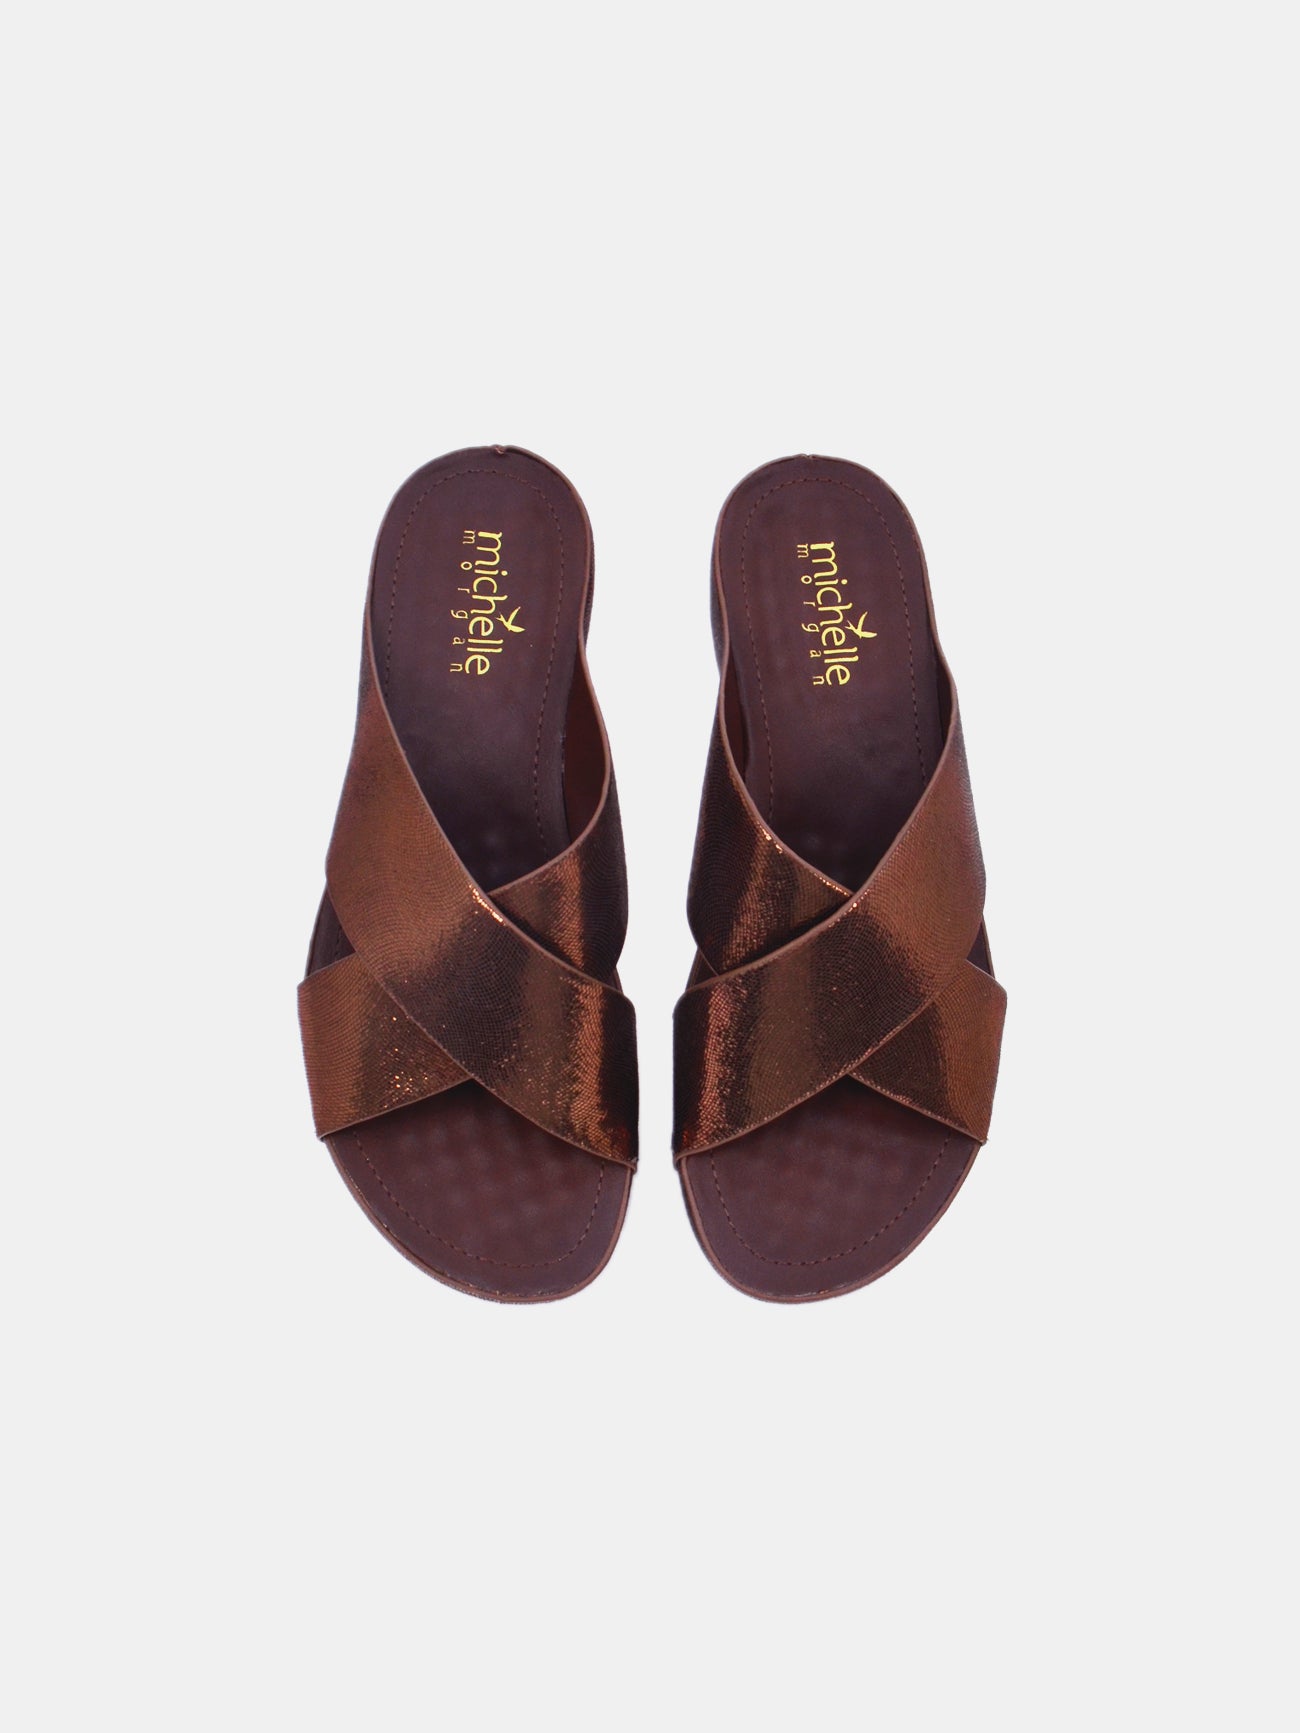 Michelle Morgan 214RJ955 Women's Wedge Sandals #color_Brown